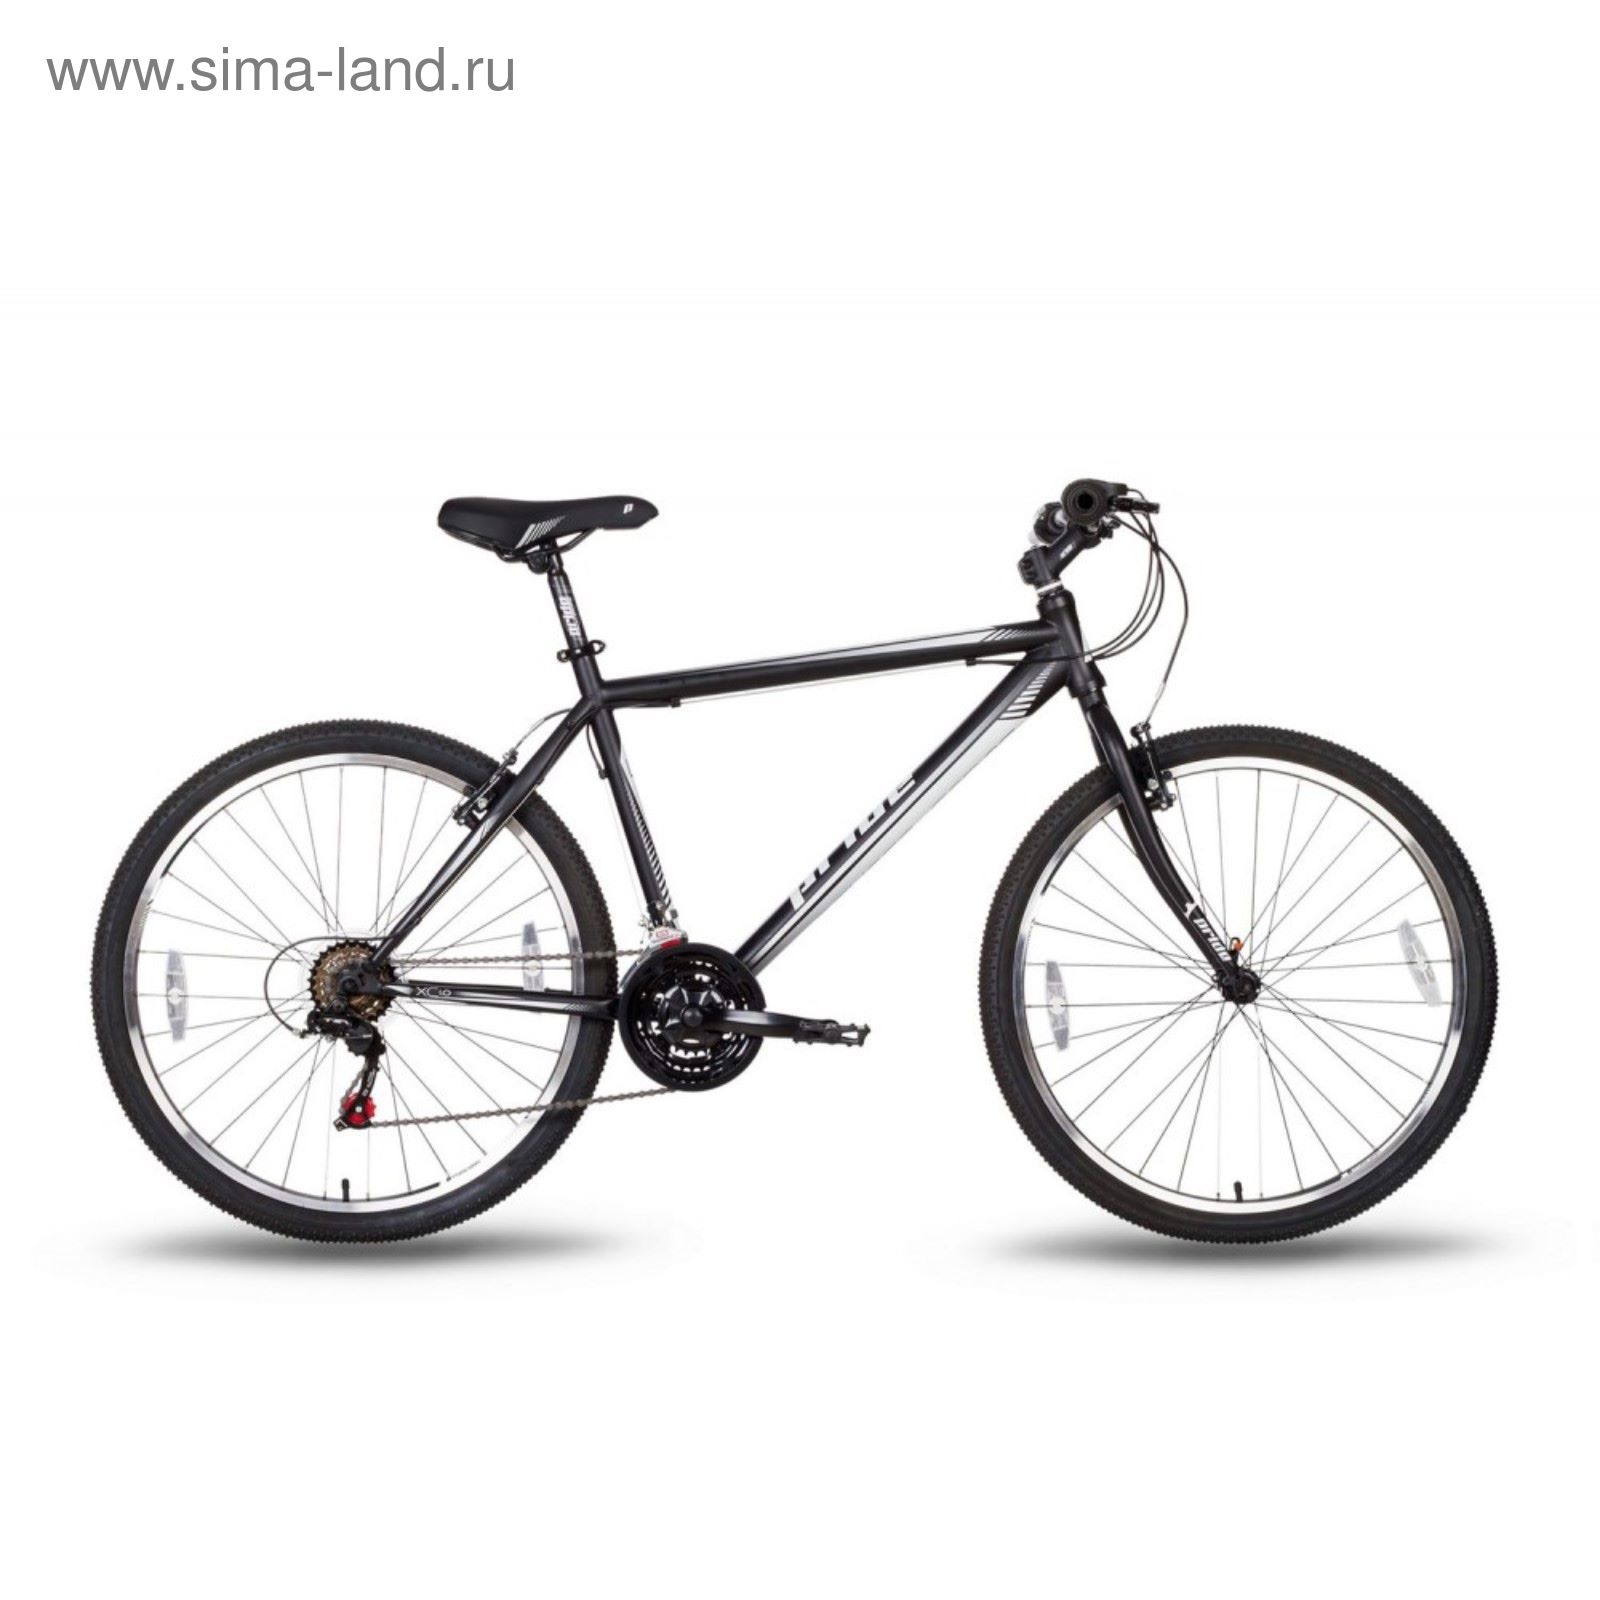 Велосипед 26'' Pride XC-1.0, 2016, цвет черно-белый матовый, размер 19"